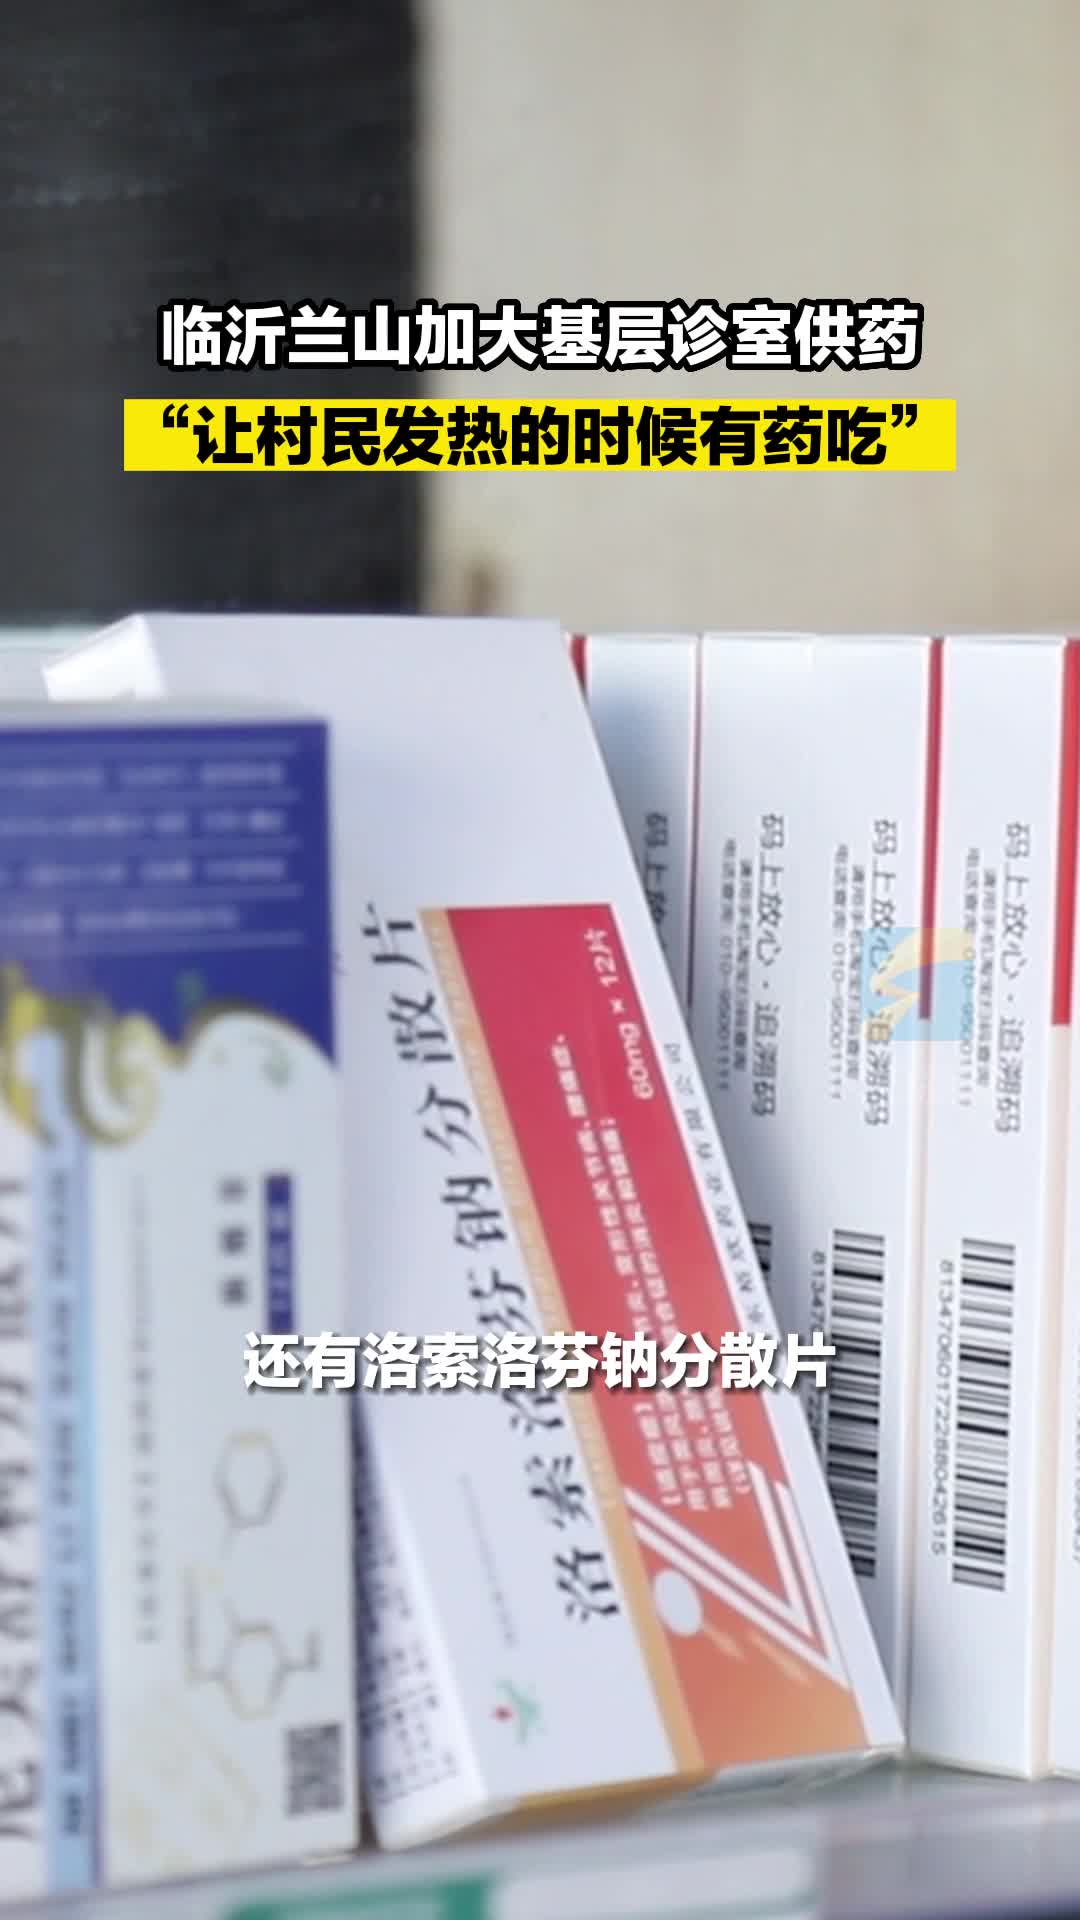 临沂兰山加大基层诊室供药：“让村民发热的时候有药吃”